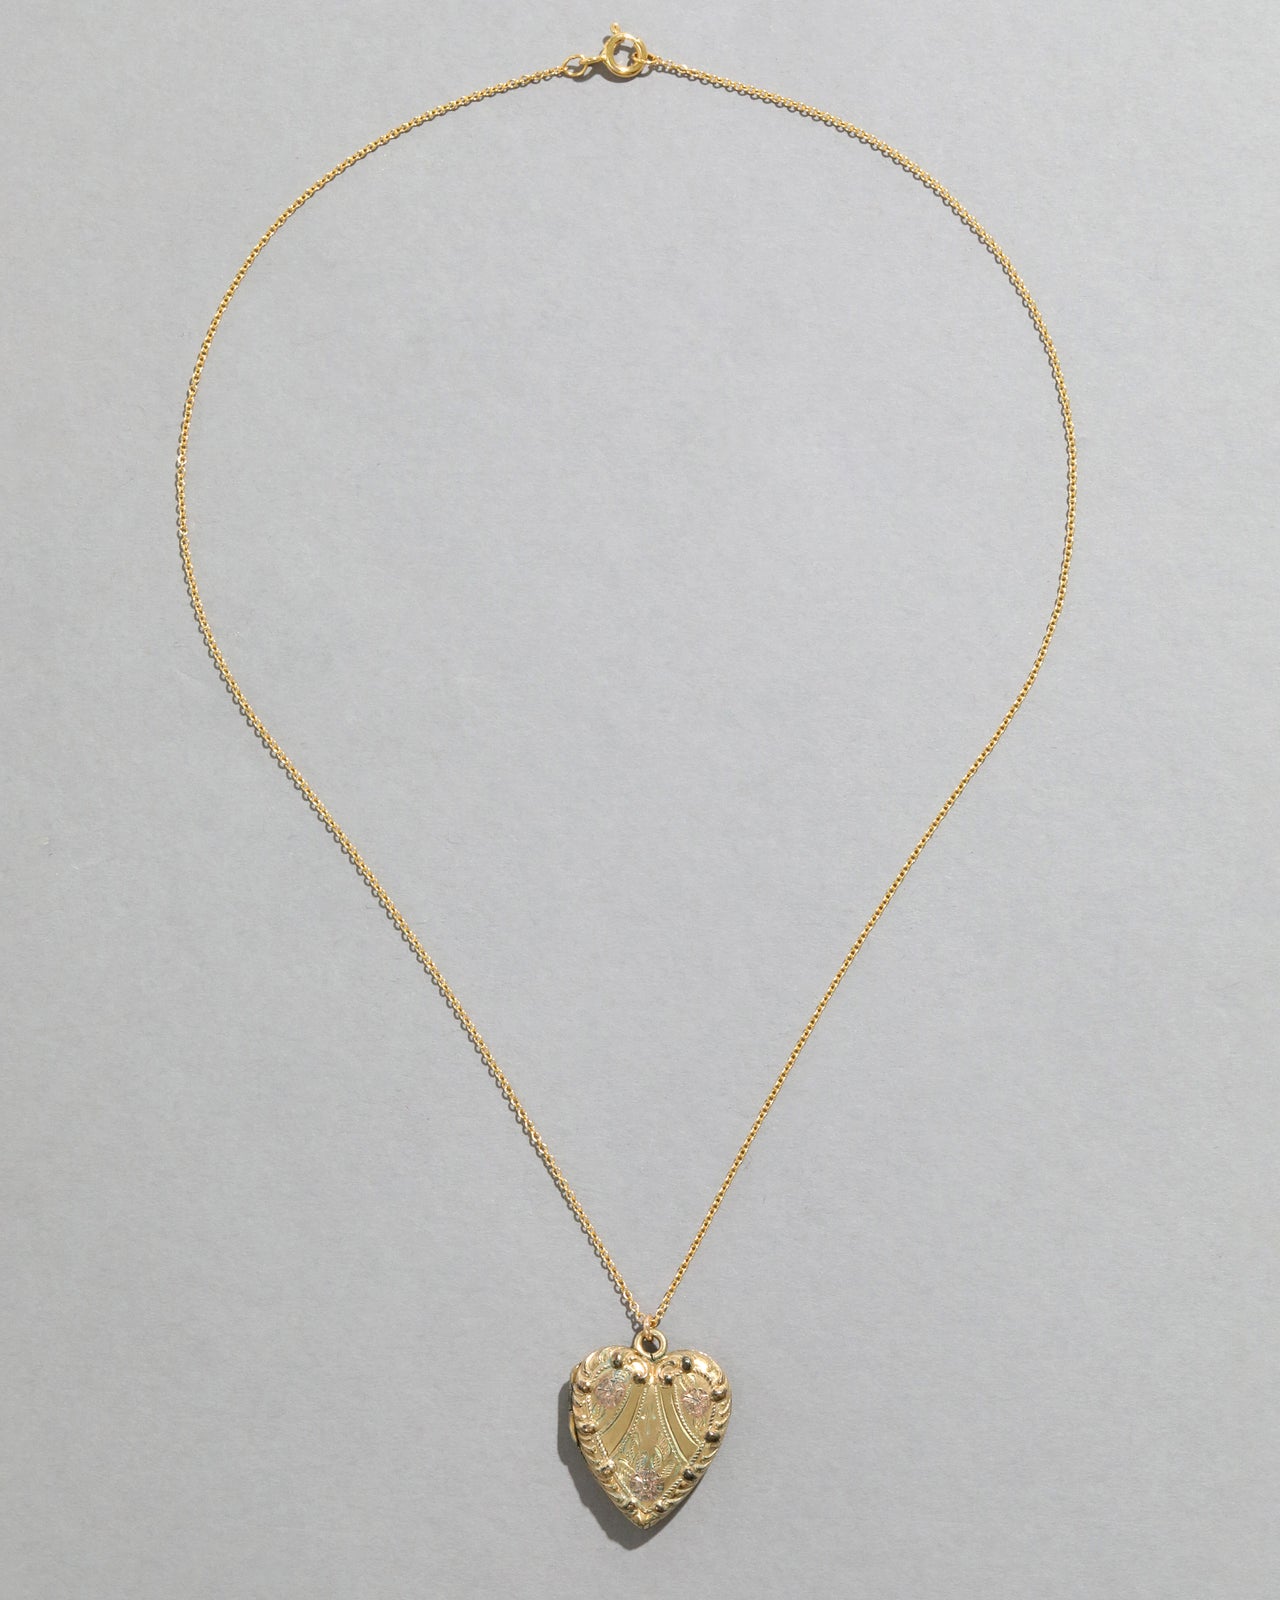 Vintage 1950s 10k Gold FIlled Scrolling Heart Locket Necklace - Photo 2